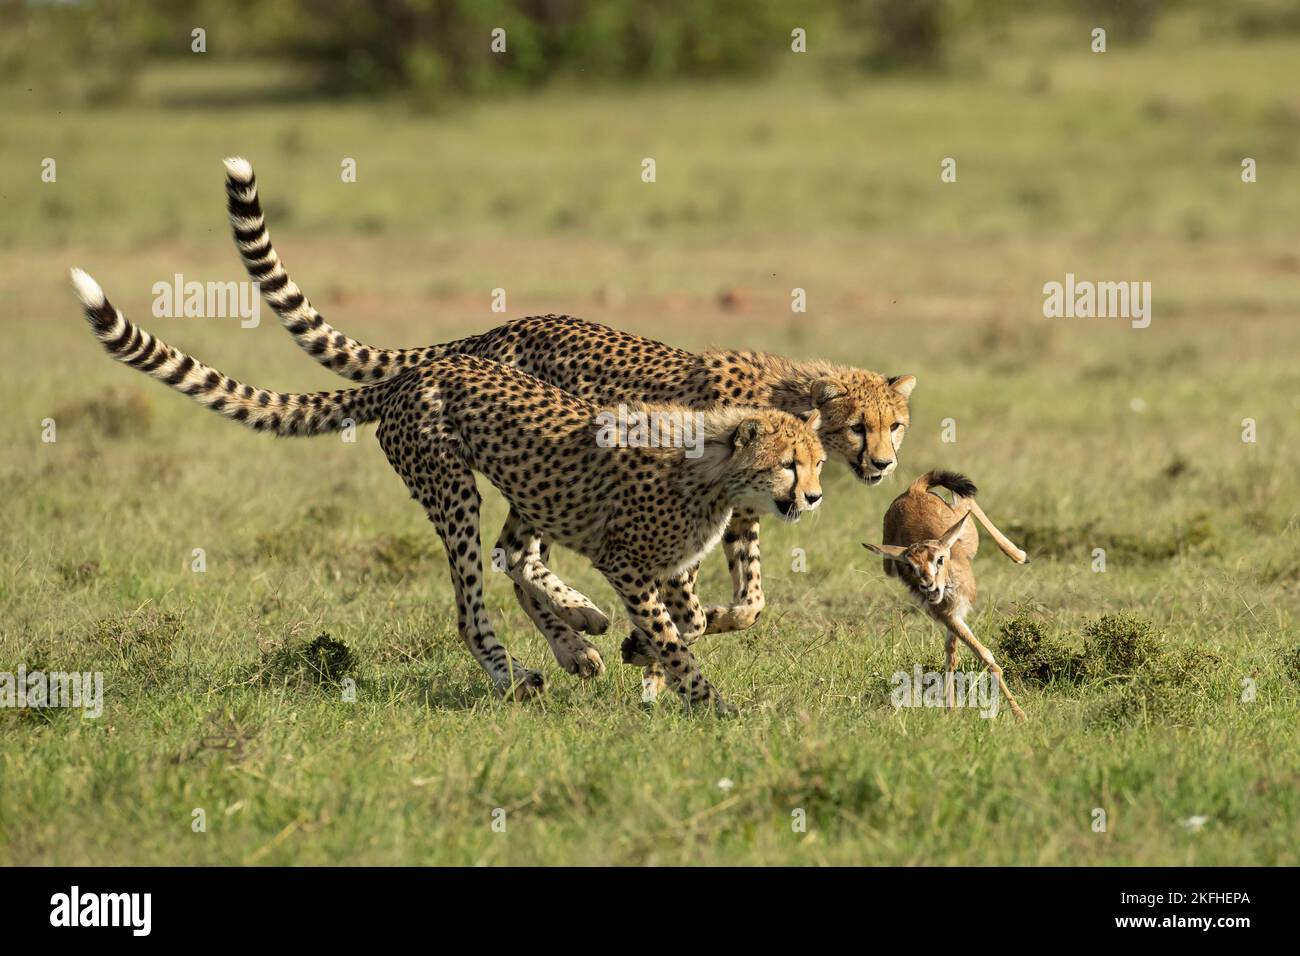 Die Geparden-Mutter (Acinonyx jubatus) lehrt ihre Jungen, wie sie Beute fangen, niederbringen und damit umgehen können Stockfoto